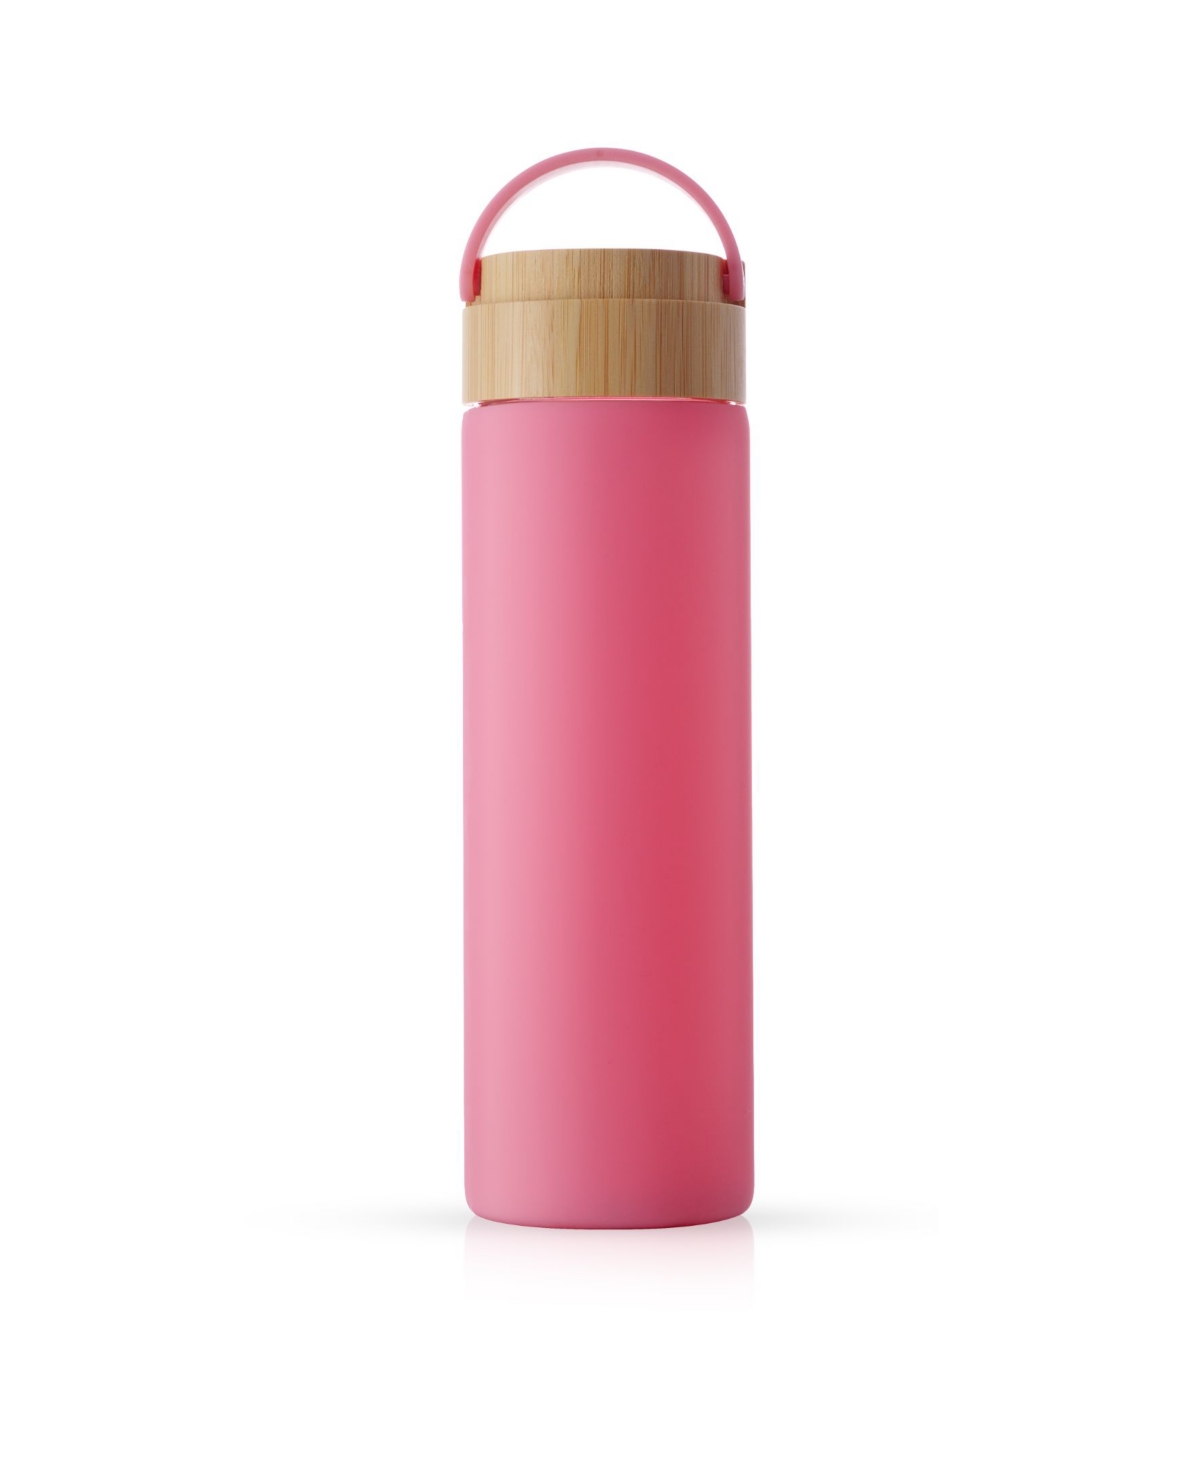 Joyjolt Glass Water Bottle In Pink